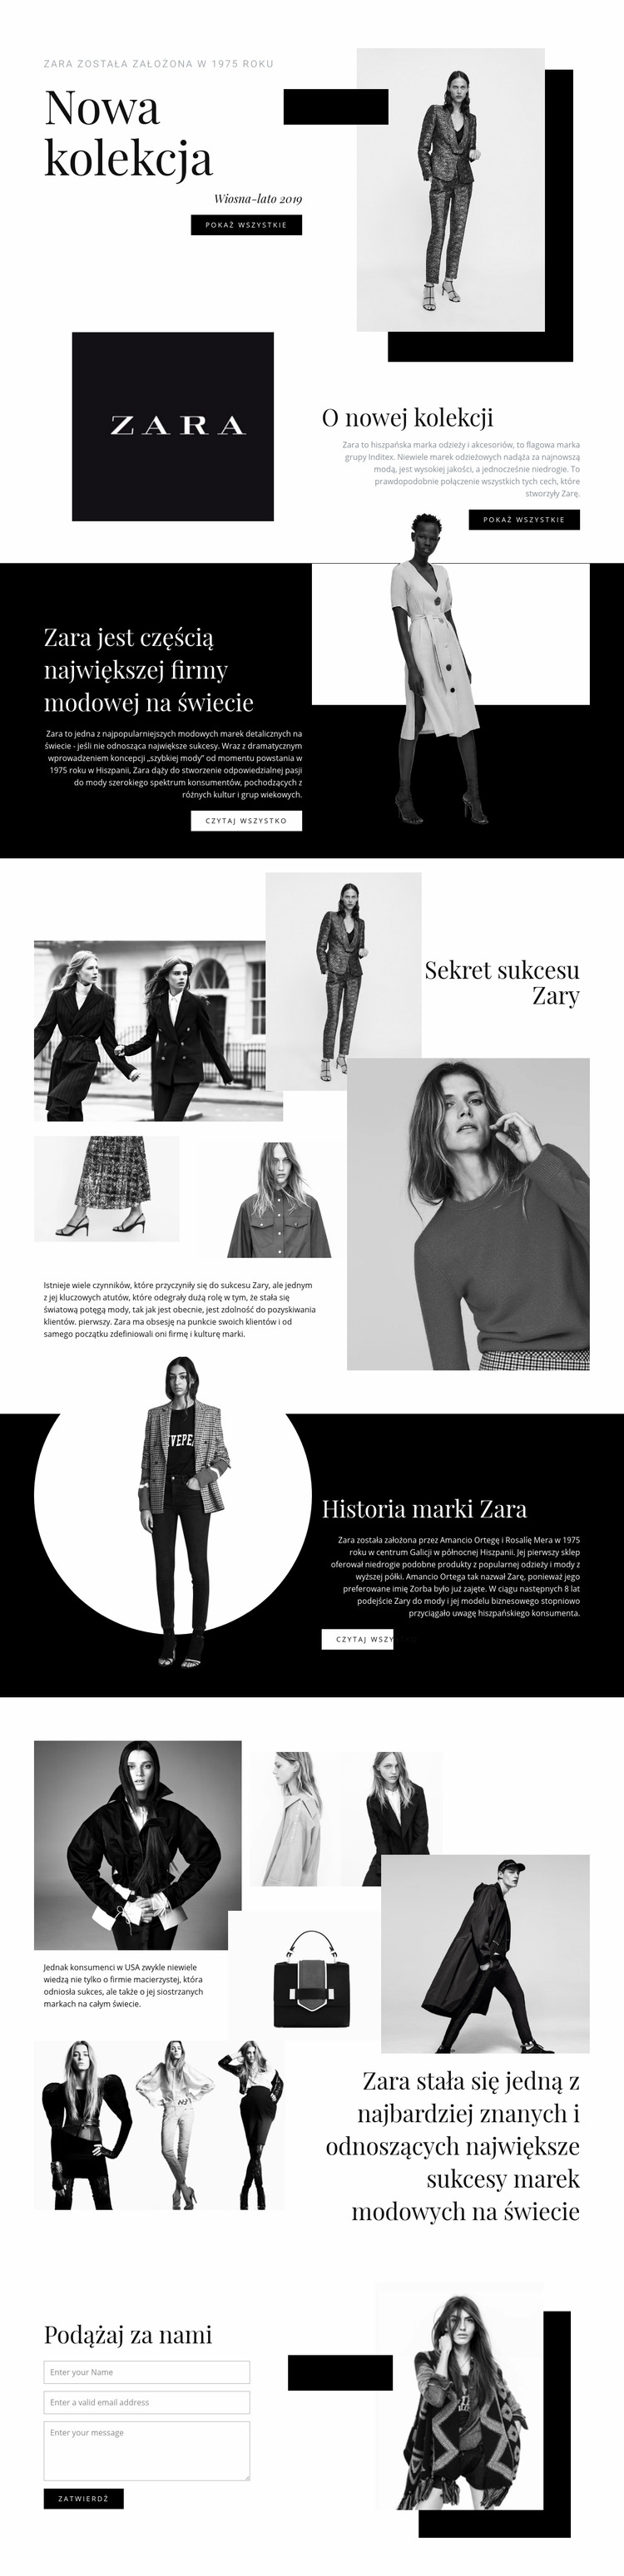 Kolekcja Zara Szablon Joomla